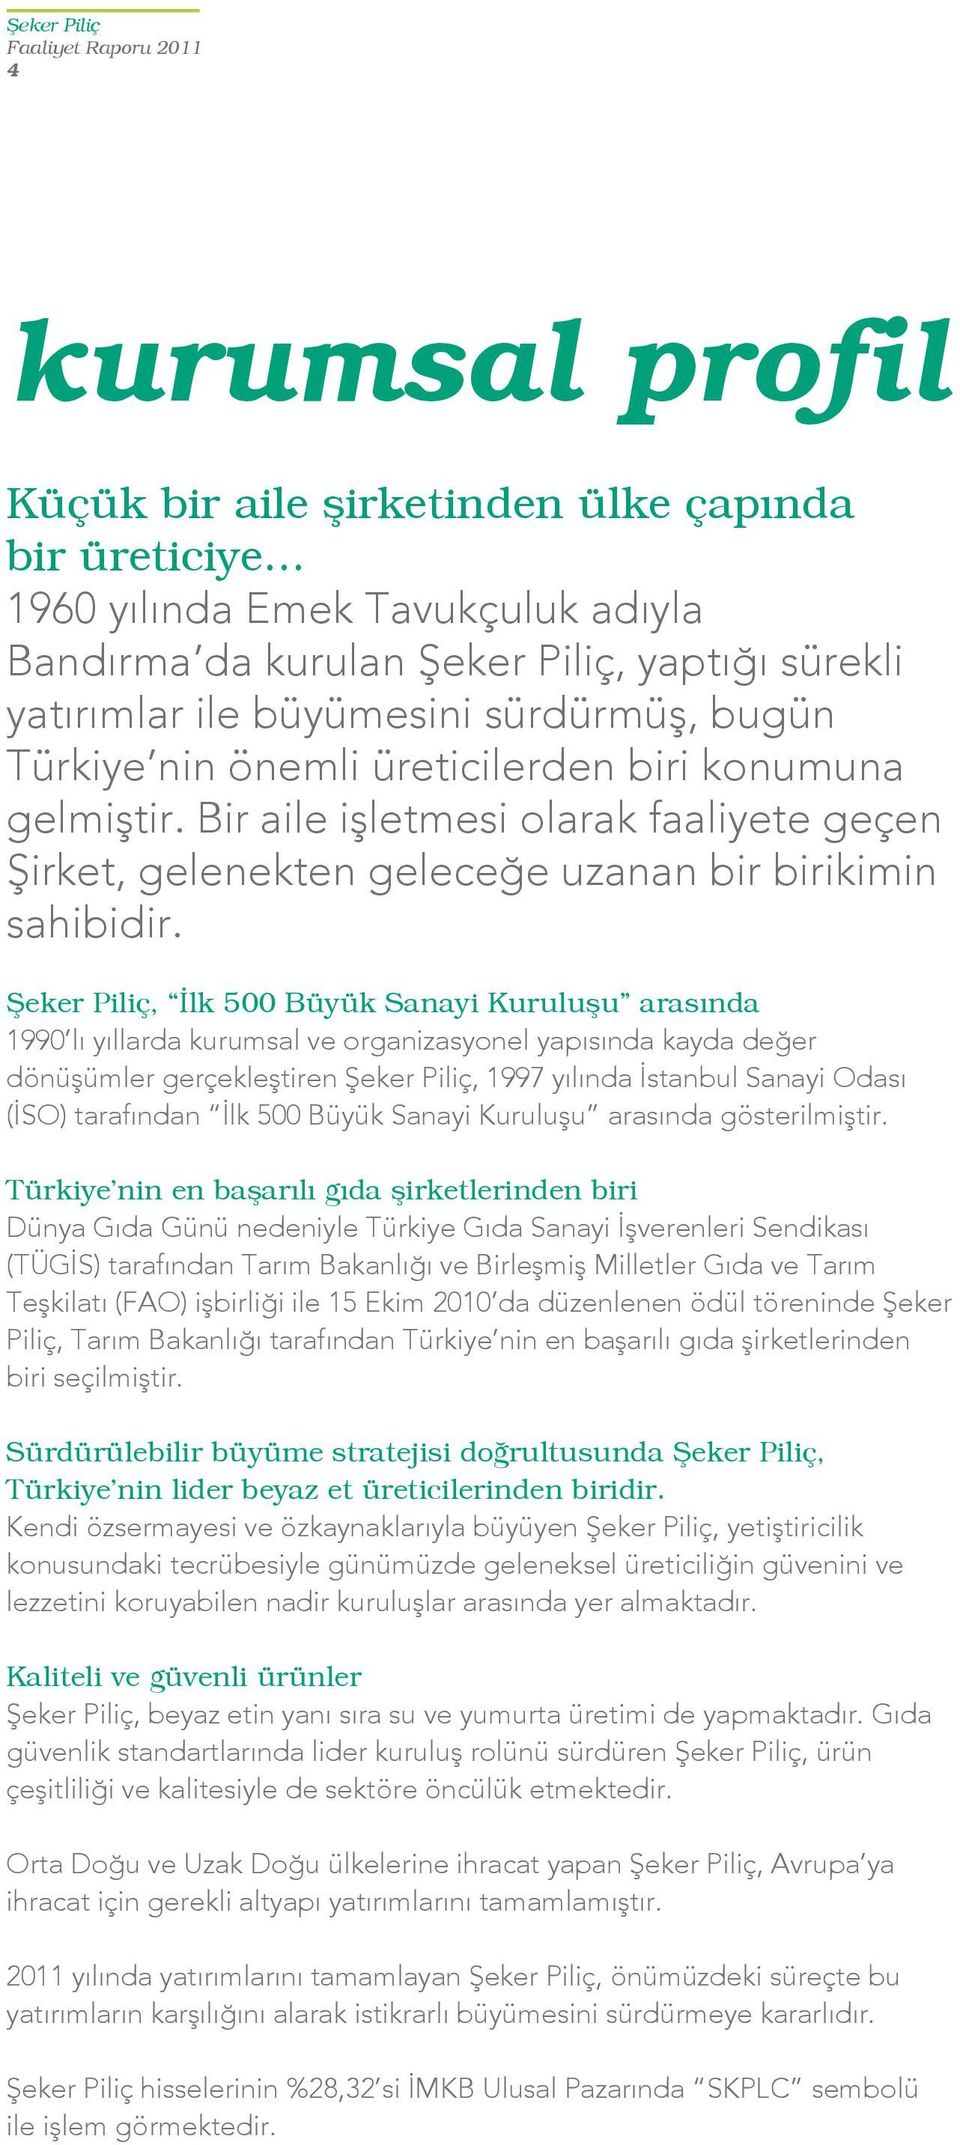 Şeker Piliç, İlk 500 Büyük Sanayi Kuruluşu arasında 1990 lı yıllarda kurumsal ve organizasyonel yapısında kayda değer dönüşümler gerçekleştiren Şeker Piliç, 1997 yılında İstanbul Sanayi Odası (İSO)